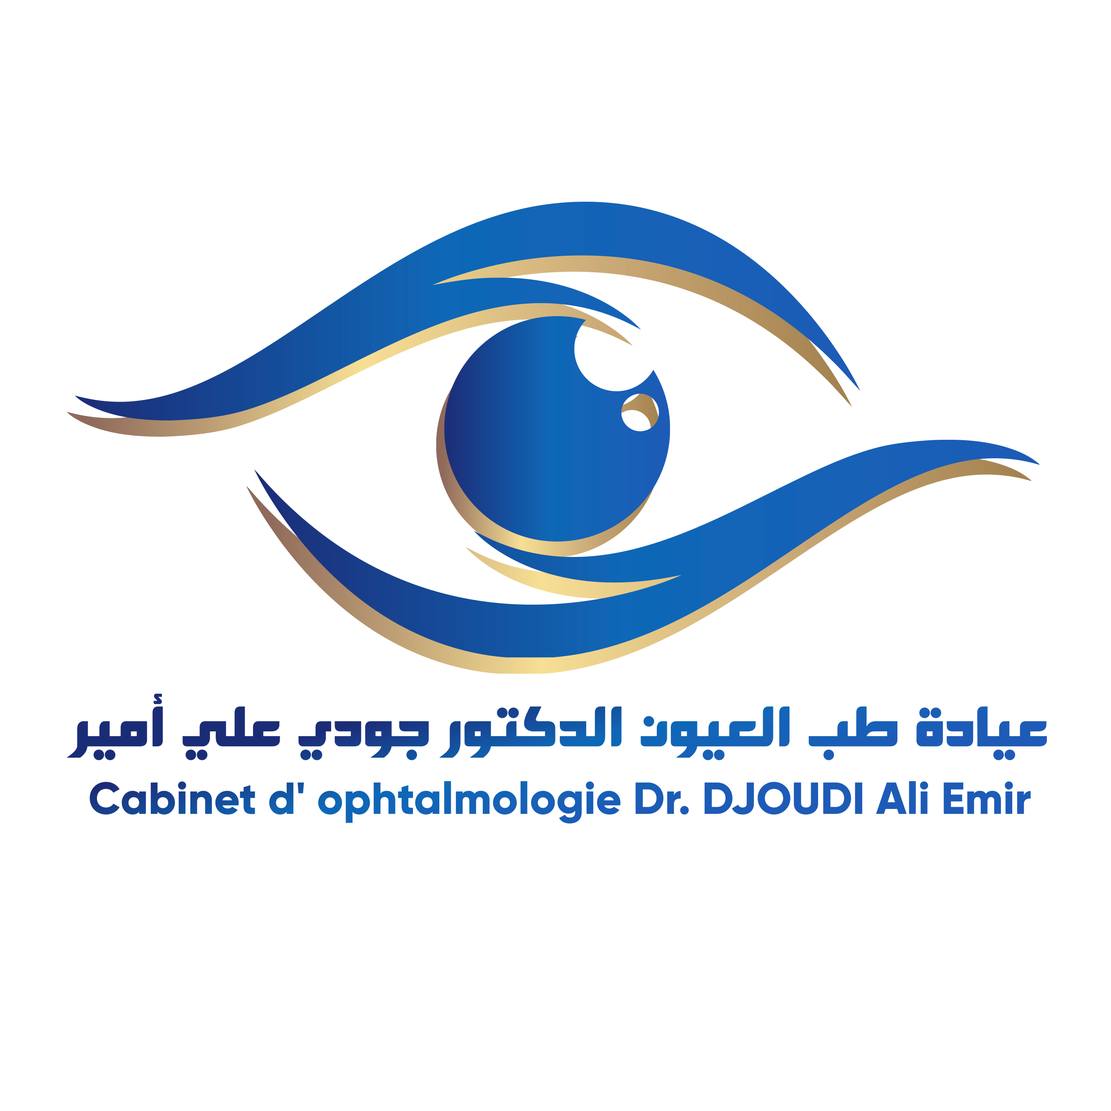 طب العيون | جودي علي أمير | سطيف - سطيف - ophtalmologie | Djoudi Ali Emir | setif - سطيف